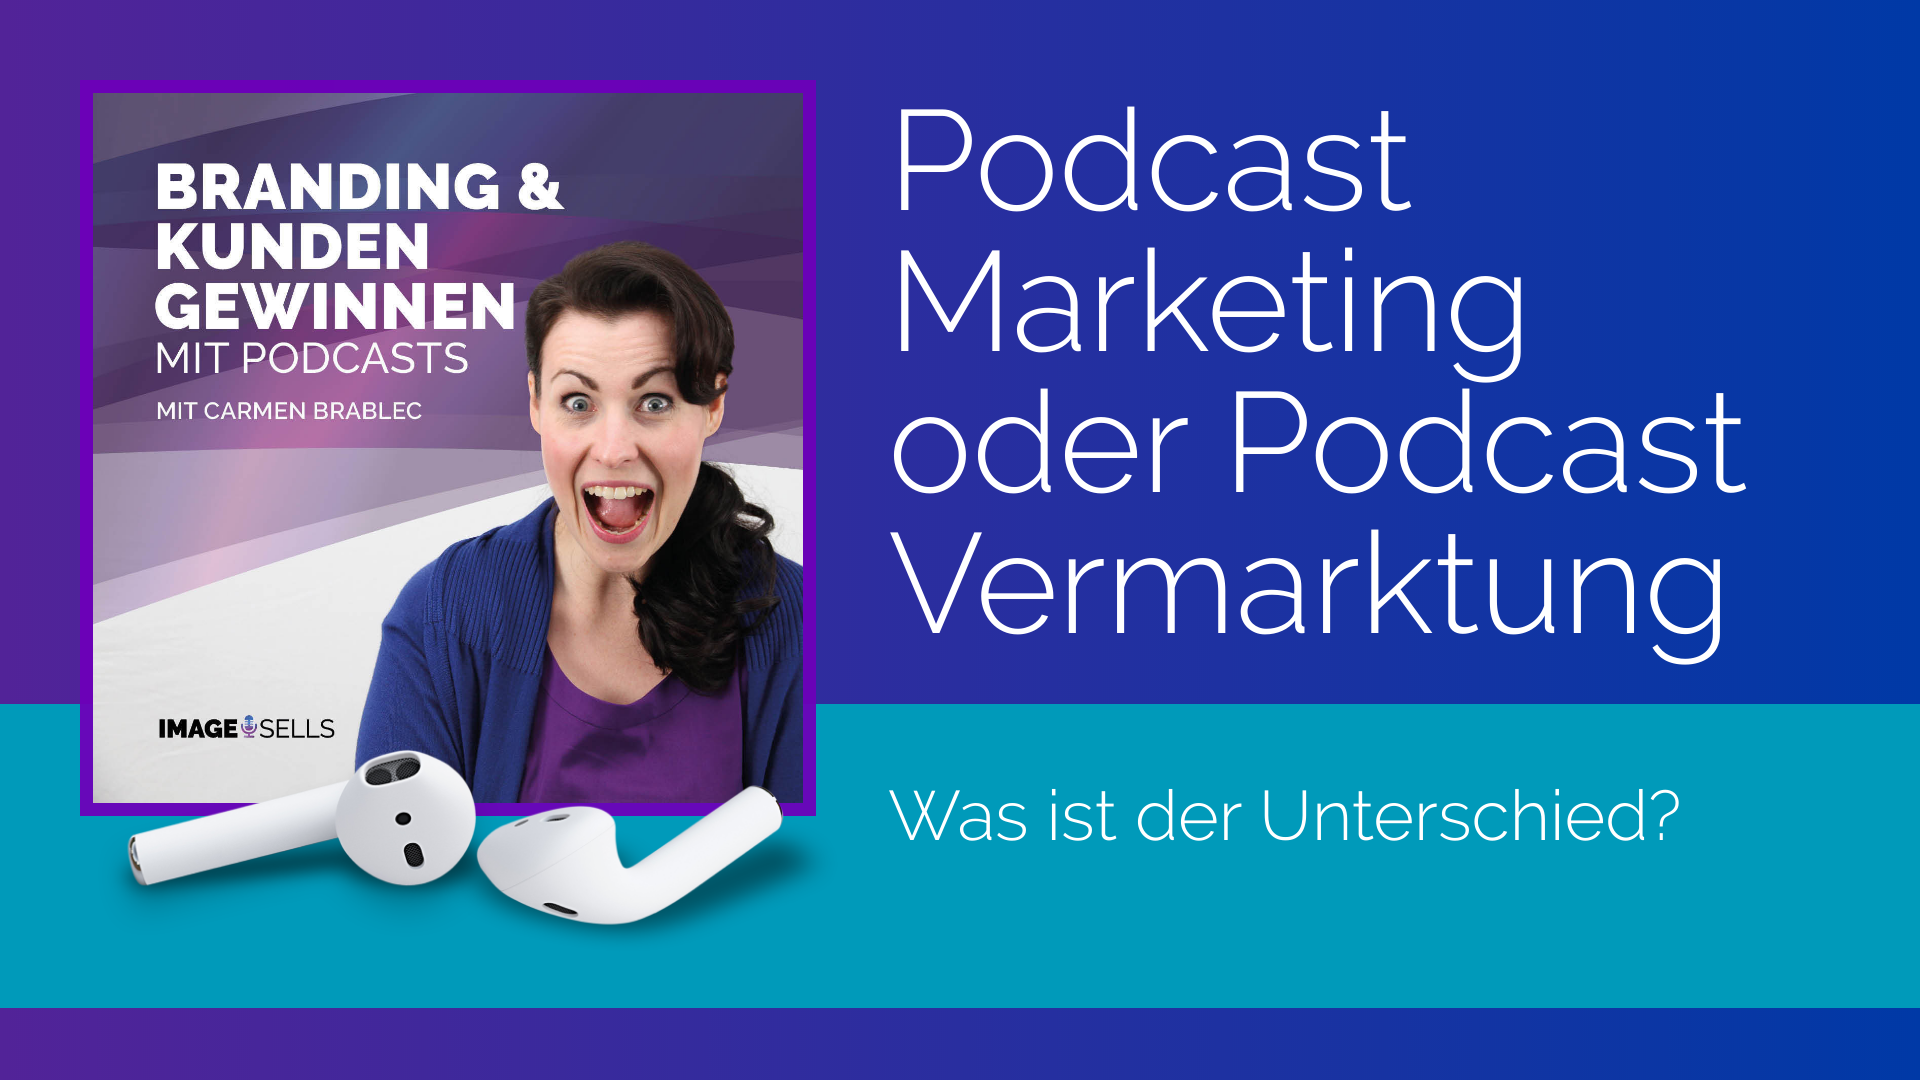 Podcast Marketing oder Podcast Vermarktung – was ist der Unterschied?